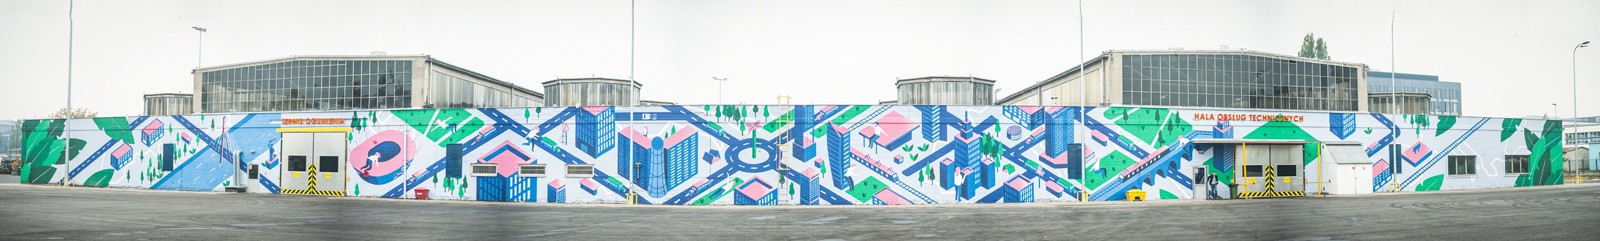 Dni transportu publicznego w Warszawie malowidło na ścianie zajezdni Woronicza | Ściana zajezdni ZTM - Dni transportu publicznego | Portfolio